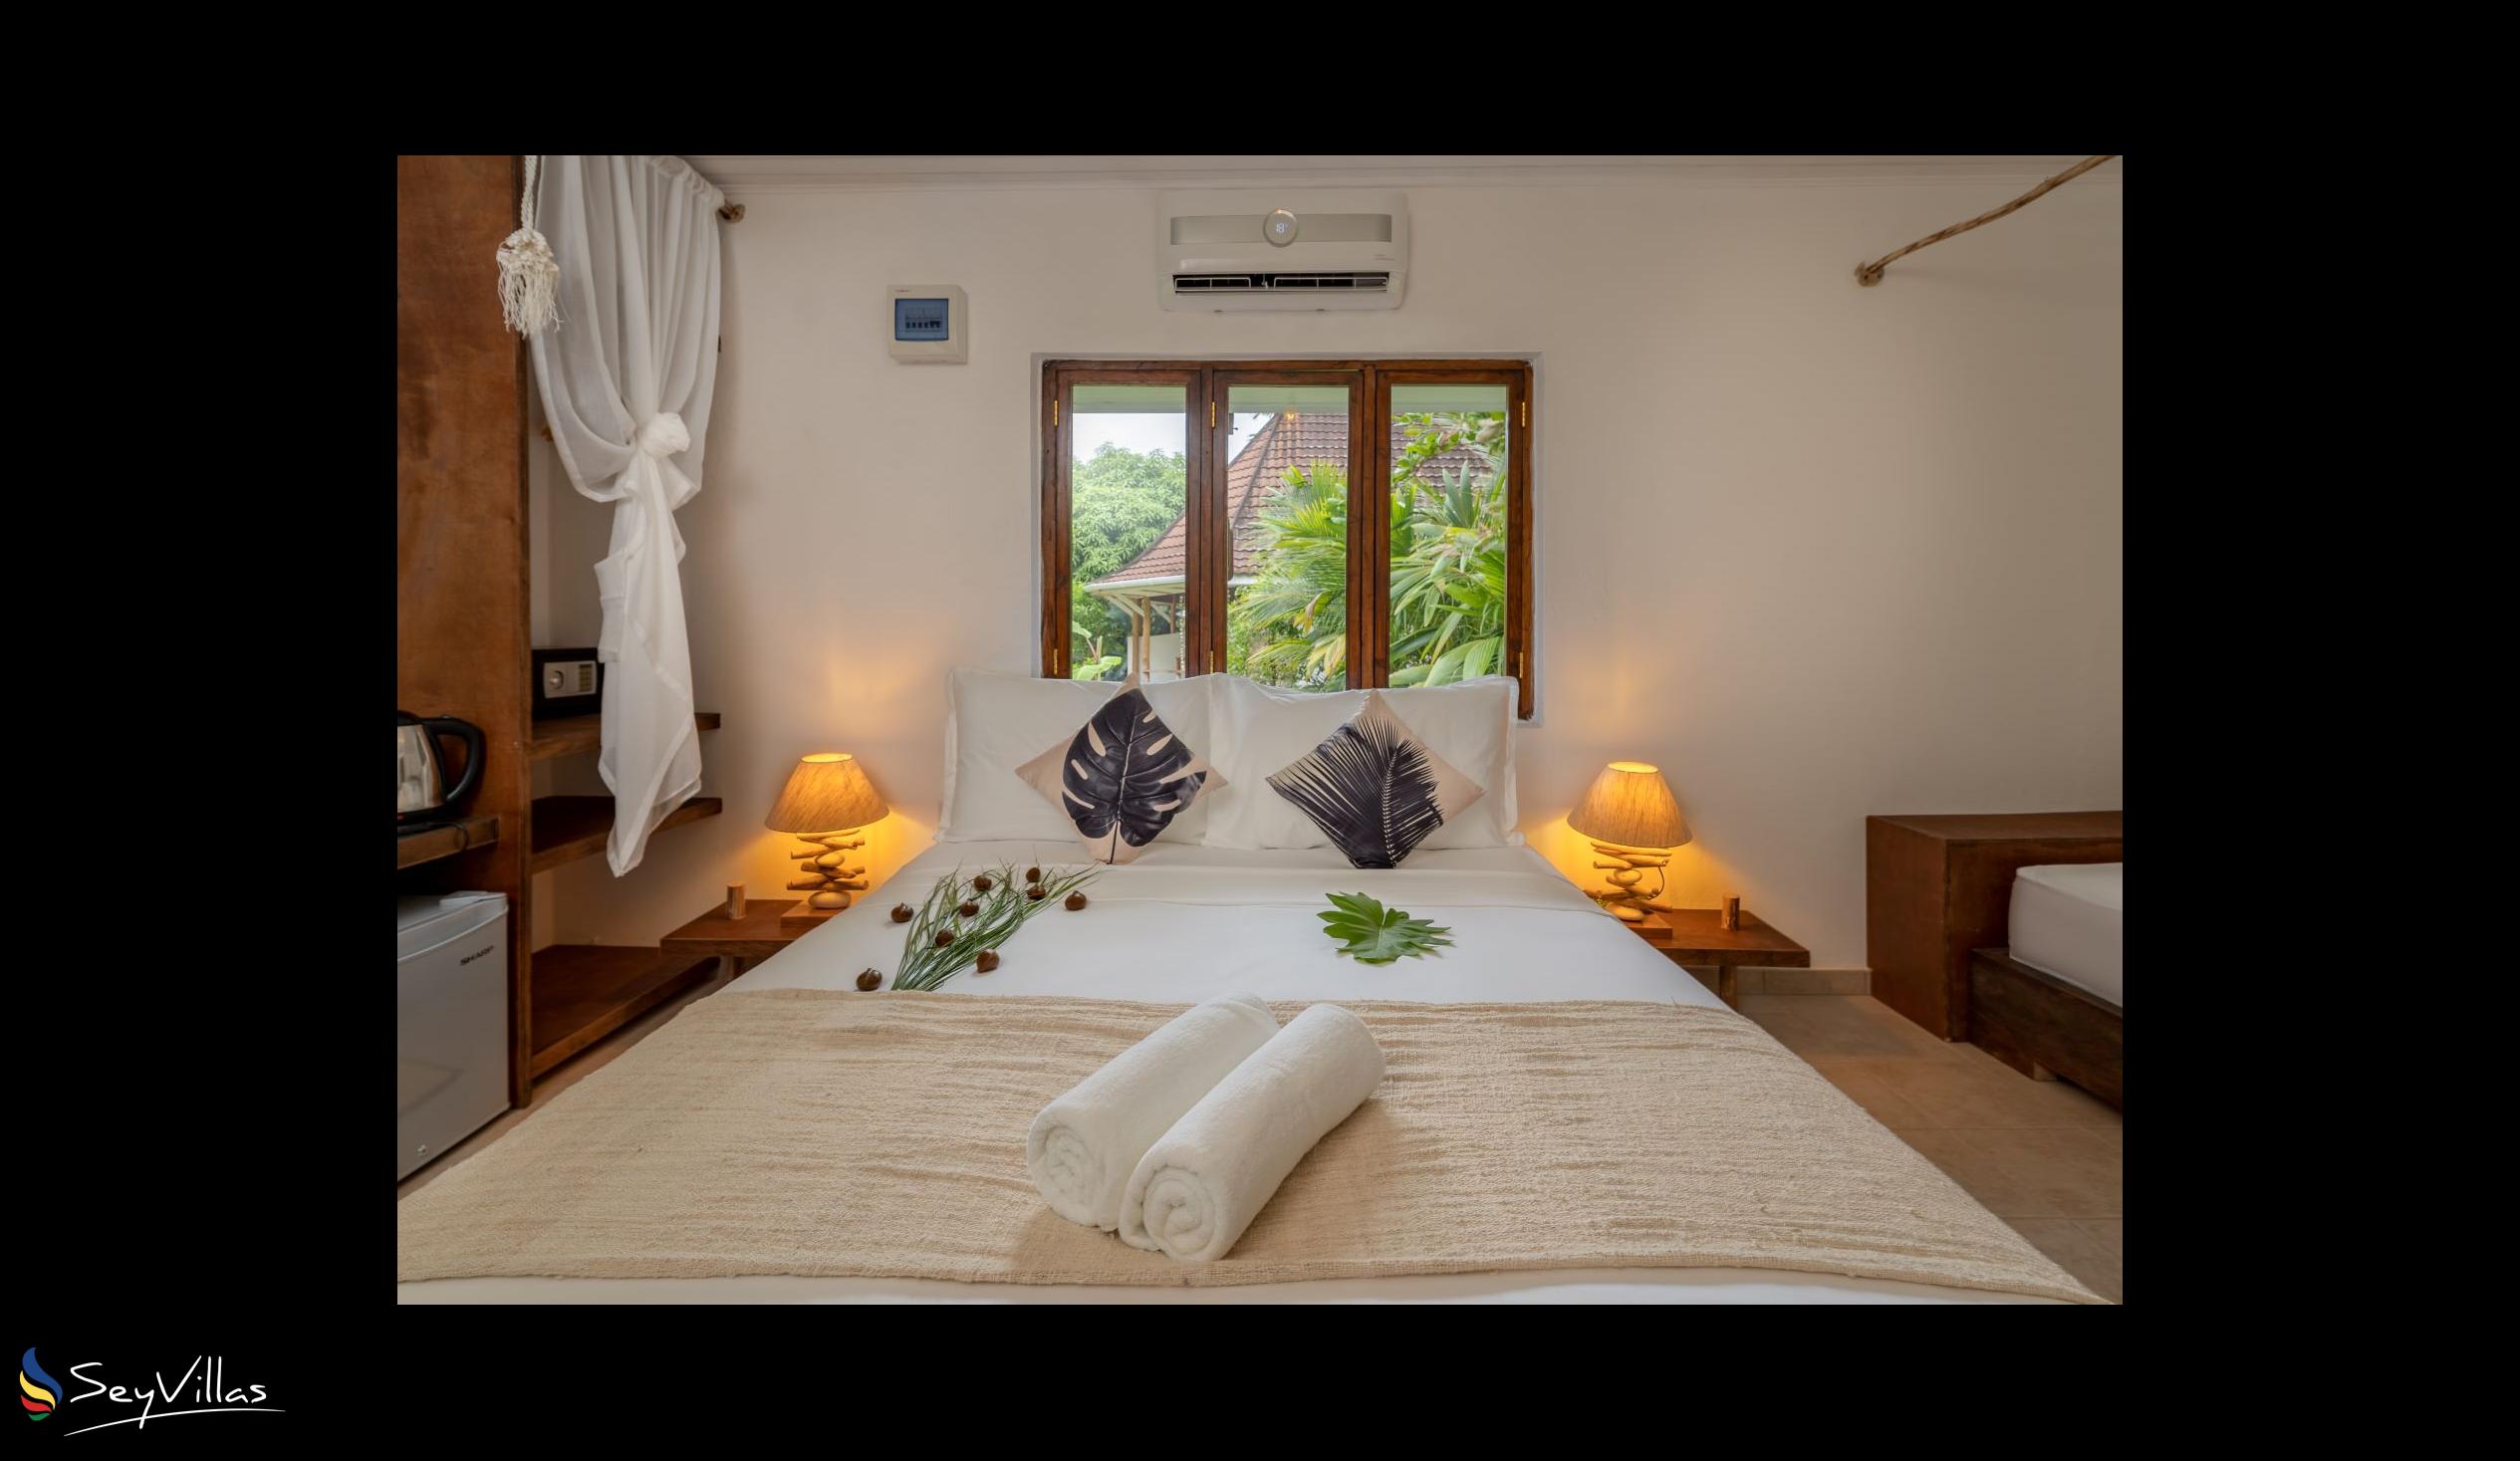 Photo 75: Bliss Hotel Praslin - Eden Garden - Family Suite - Praslin (Seychelles)